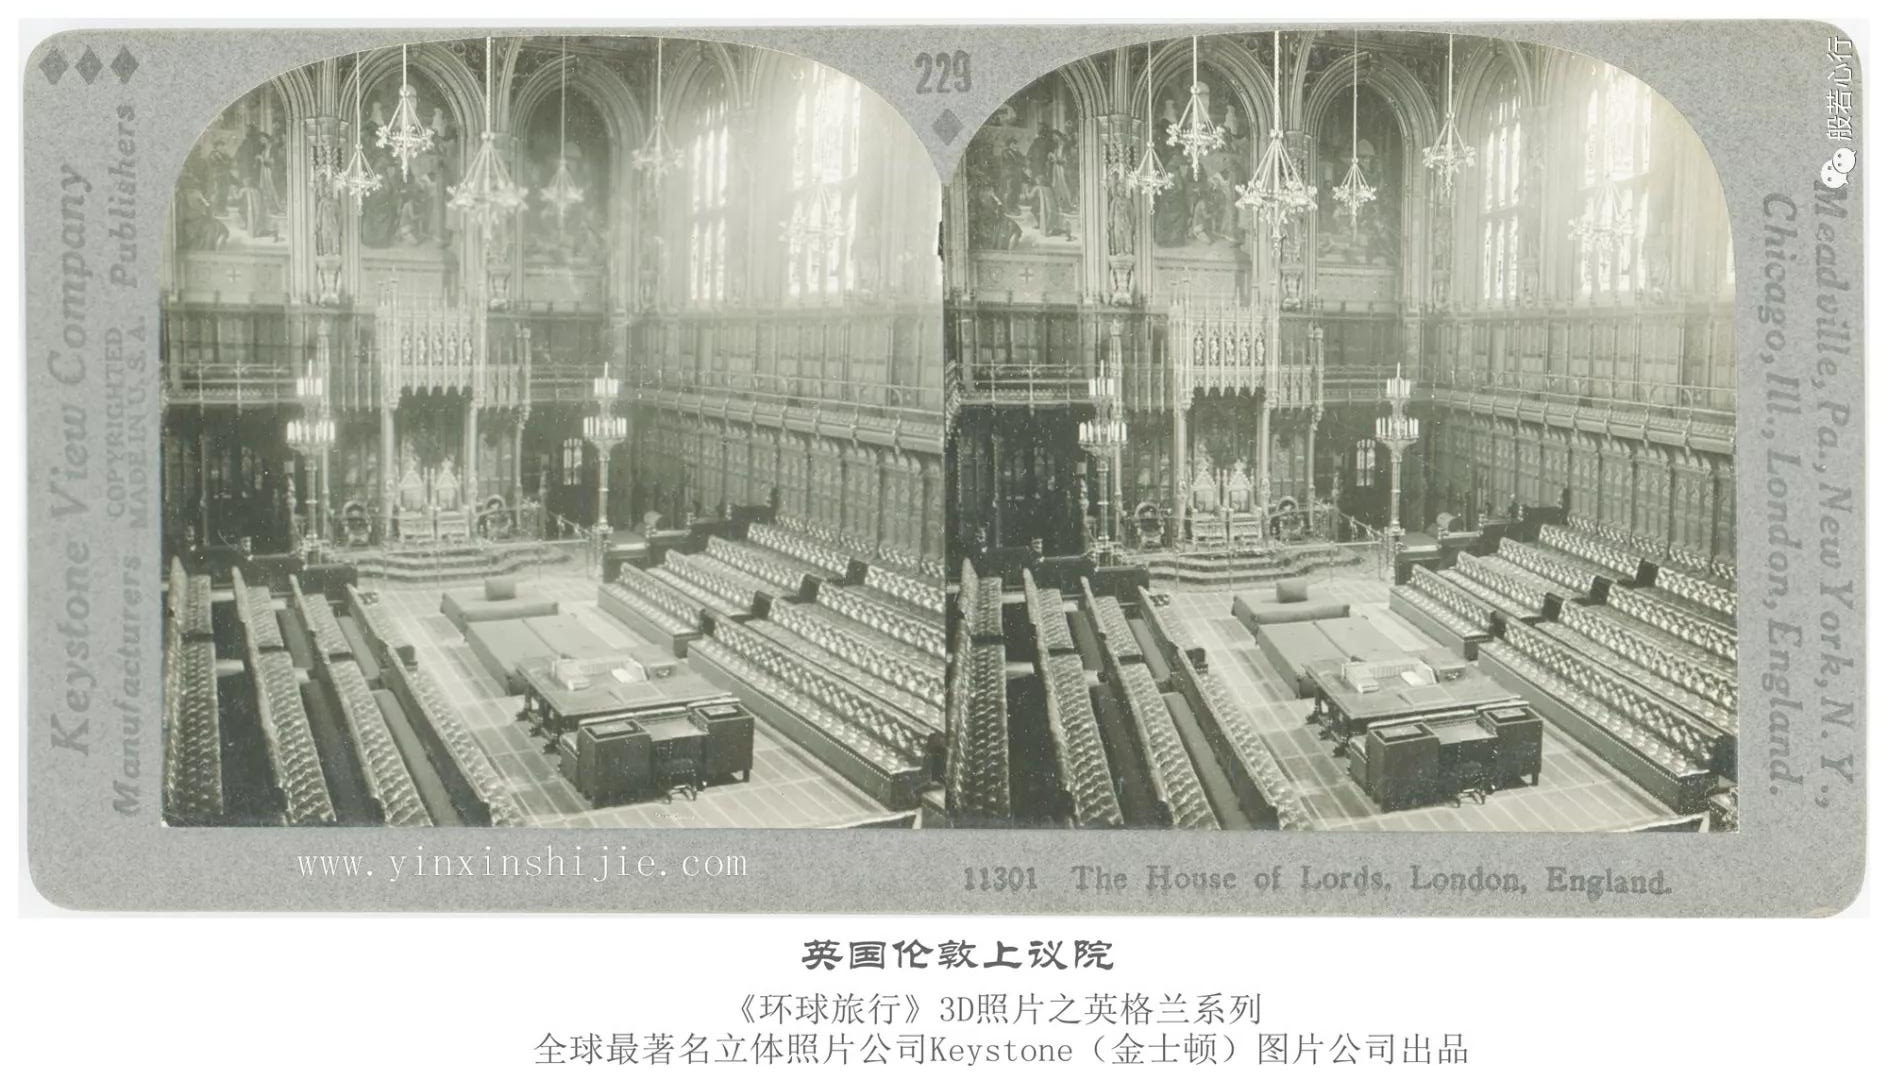 英国伦敦上议院-1936年3D版《环球旅行》立体照片